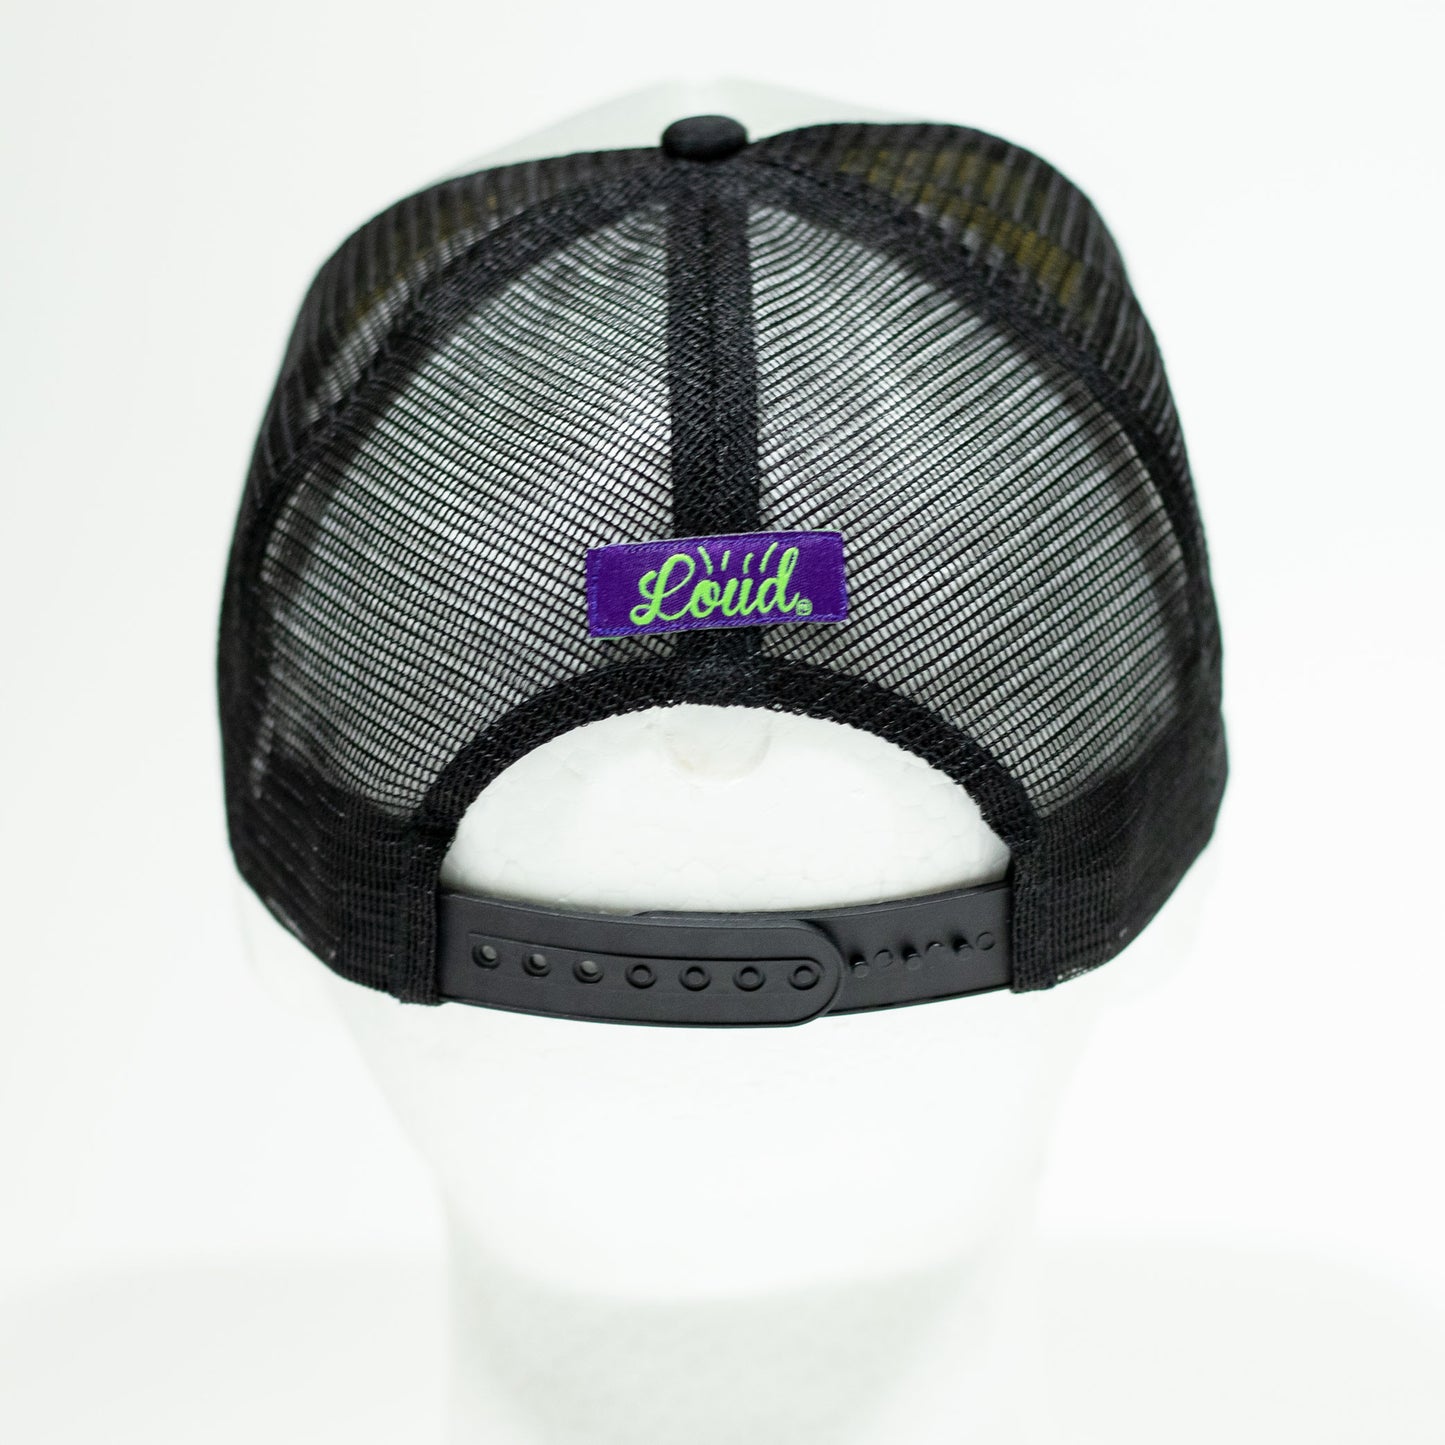 Loud Logo Trucker Hat - Black/Grey